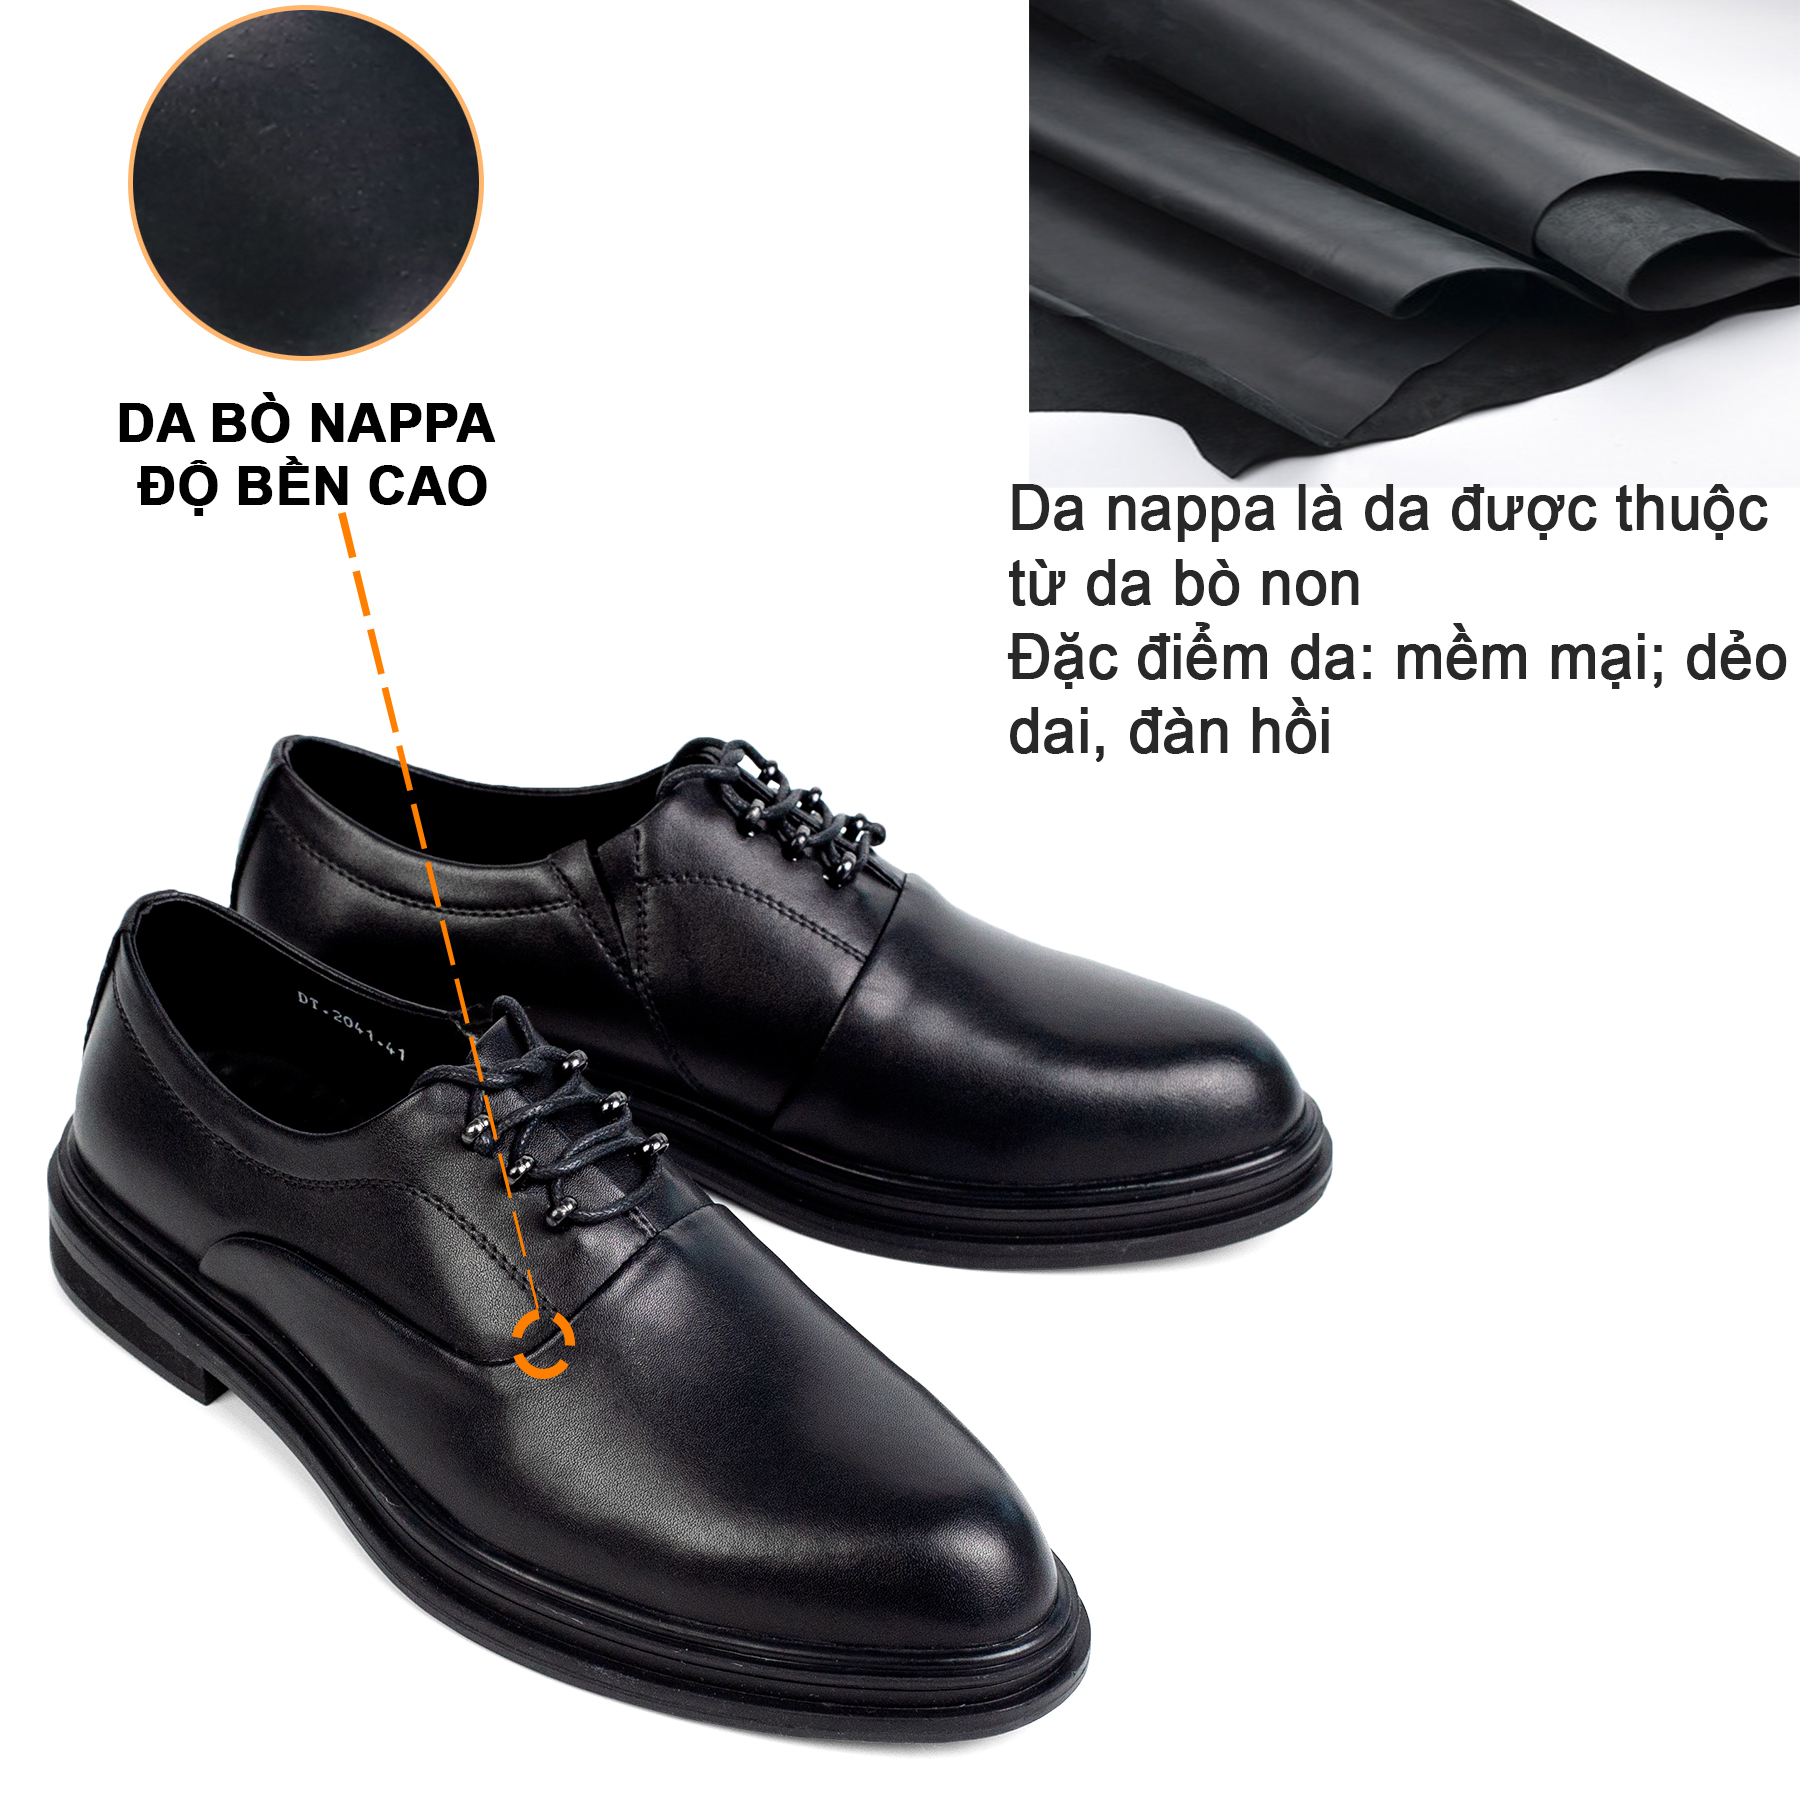 Giày da nam công sở đế cao Bụi Leather G123 - Da bò Nappa cao cấp - Phong cách trẻ trung năng động - Bảo hành 12 tháng